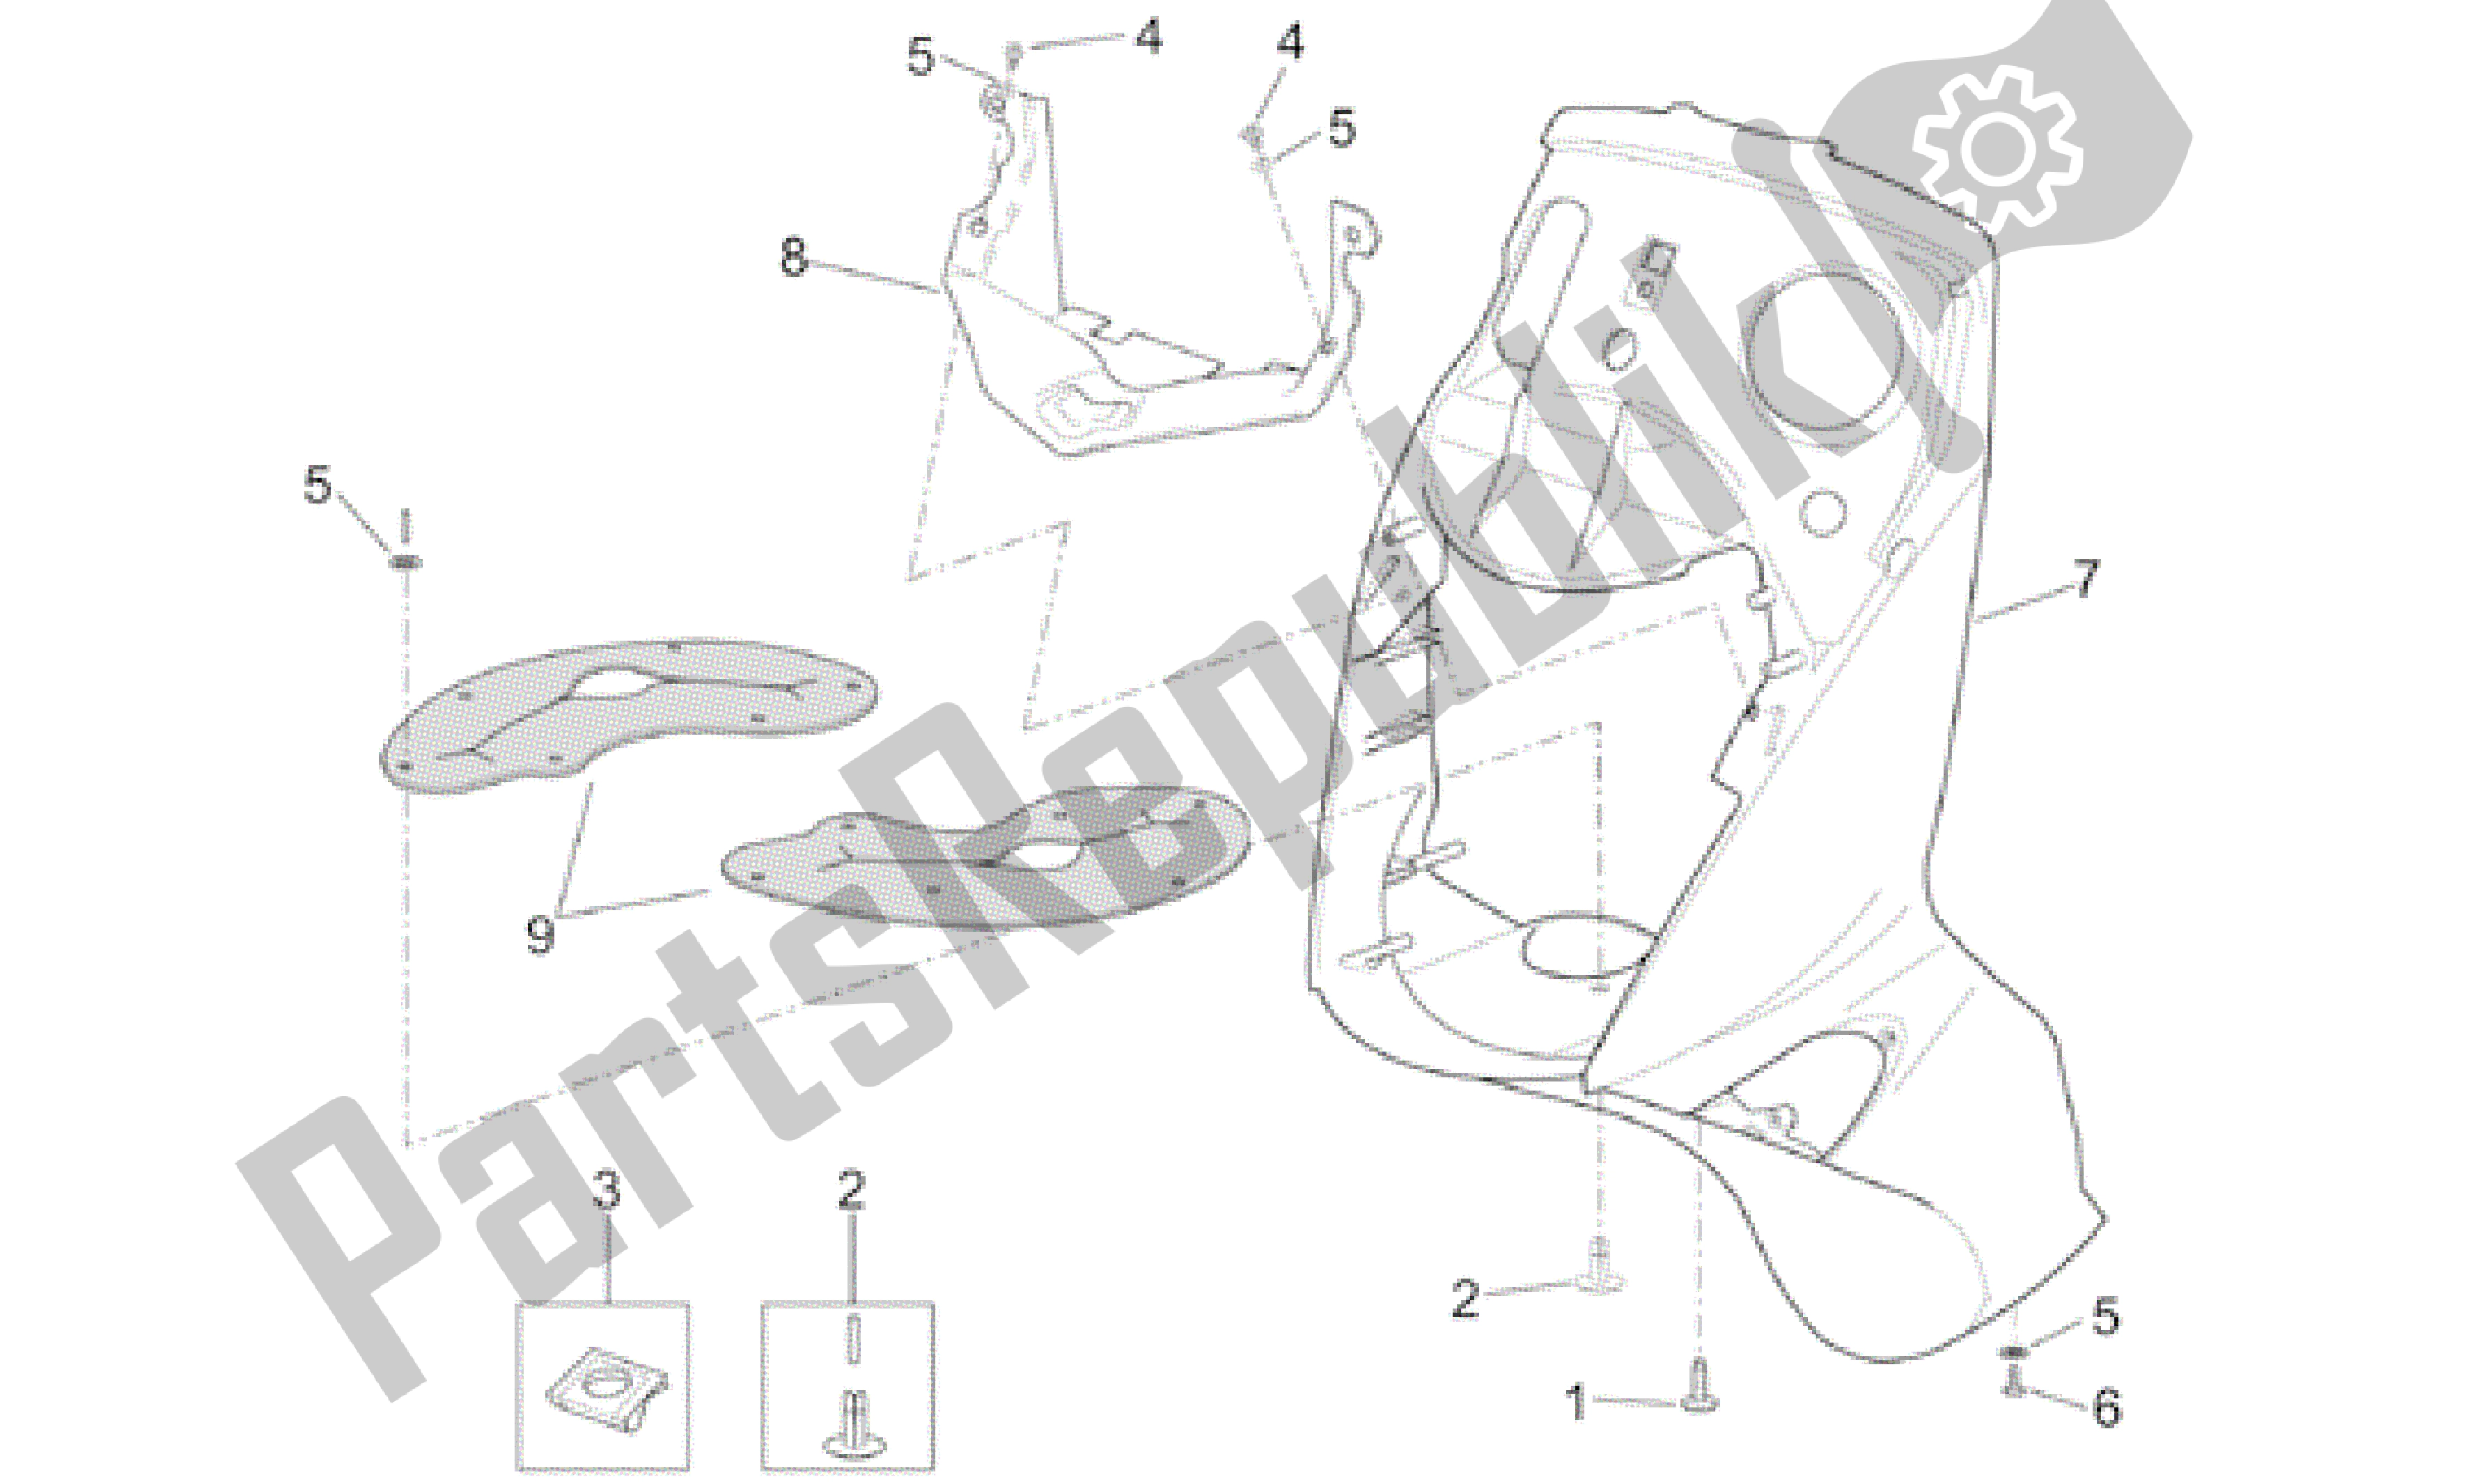 All parts for the Front Body - Shield of the Aprilia Leonardo 125 2001